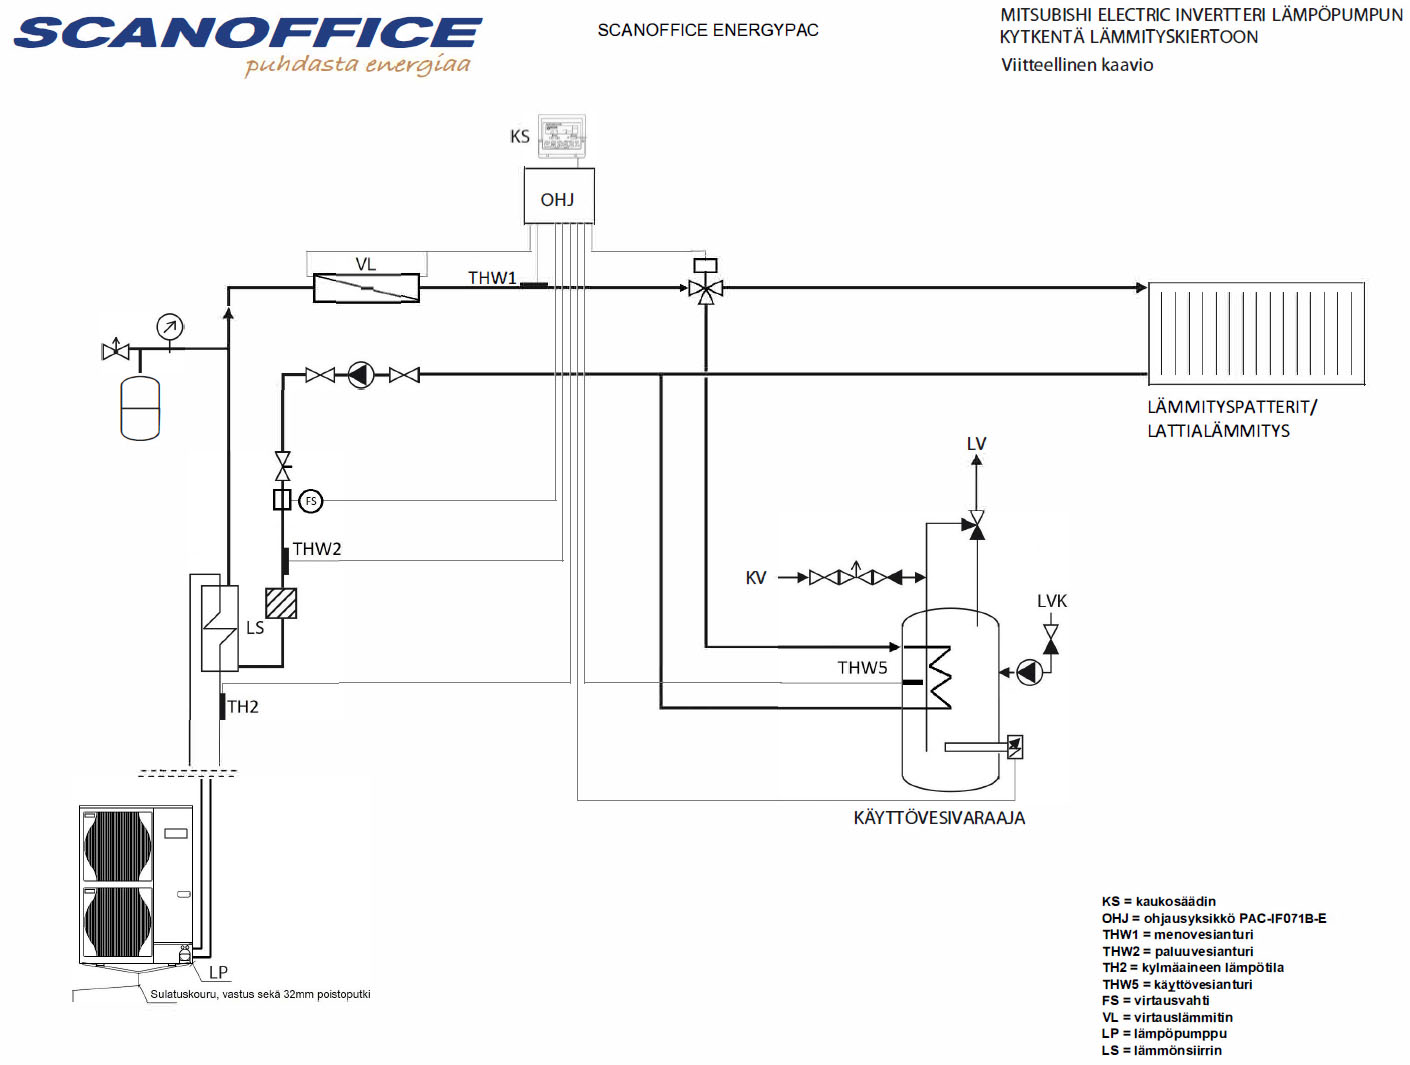 Scanoffice-Energypac ilmavesilämpöpumppu-kokonaislämmitysjärjestelmä, kaaviokuva sisällöstä, jossa levylämmönsiirrin, läpivirtauslämmitin, ohjausyksikkö, säädin, käyttövesivaraaja ja ilmavesilämpöpumppu.